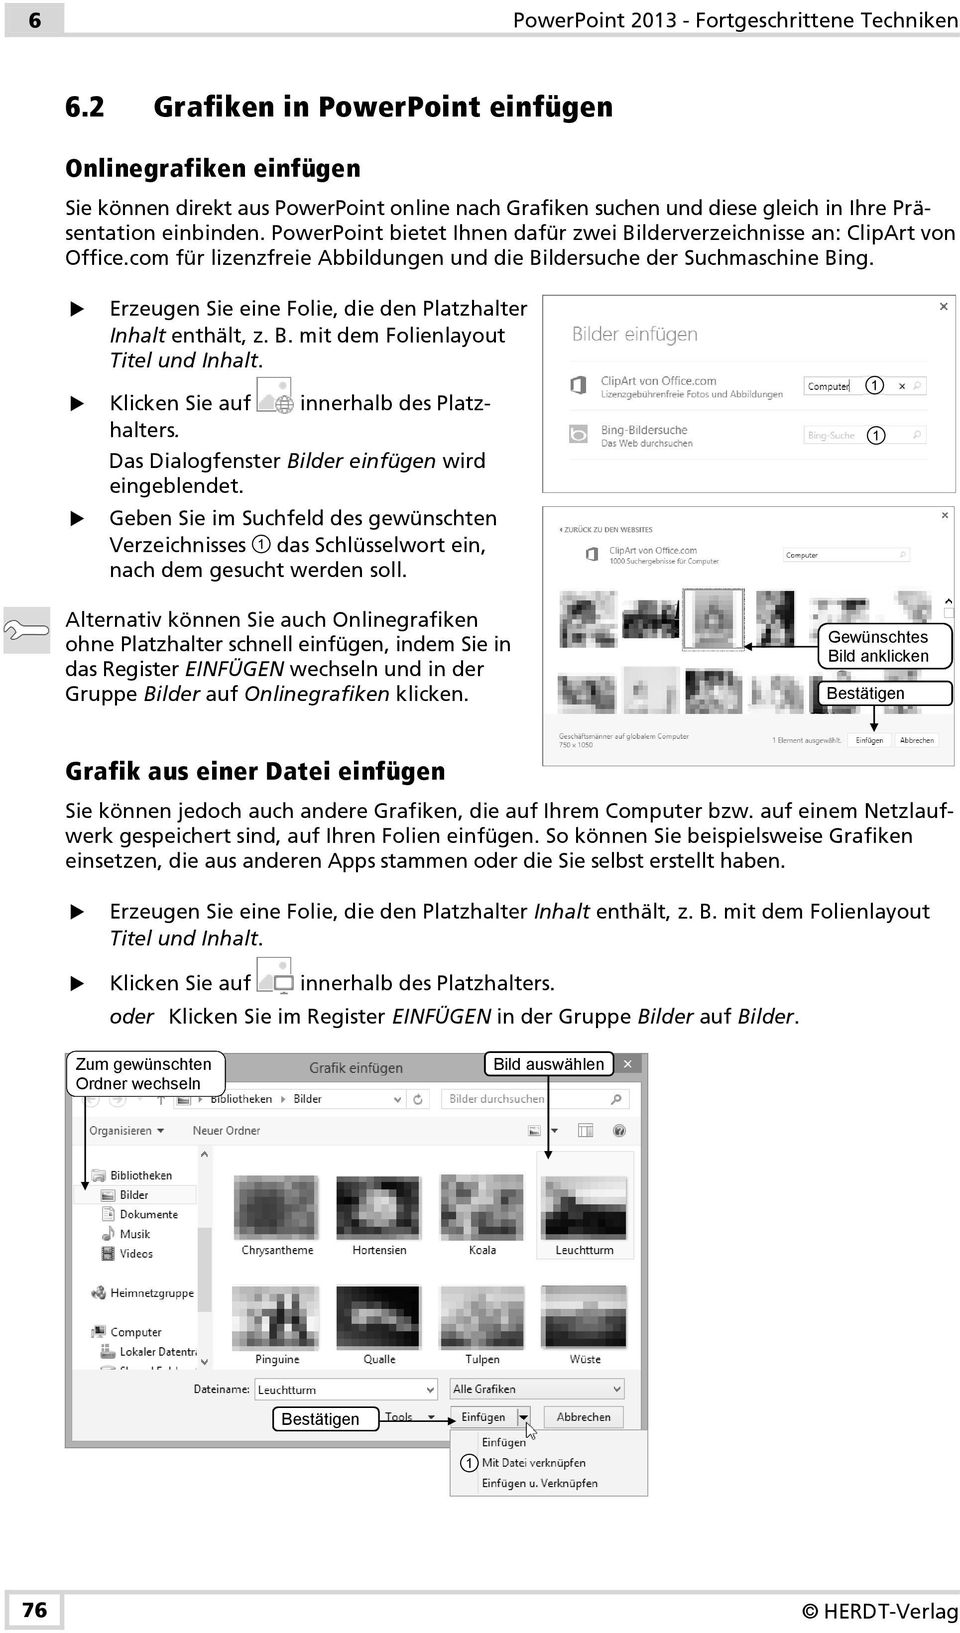 PowerPoint bietet Ihnen dafür zwei Bilderverzeichnisse an: ClipArt von Office.com für lizenzfreie Abbildungen und die Bildersuche der Suchmaschine Bing.